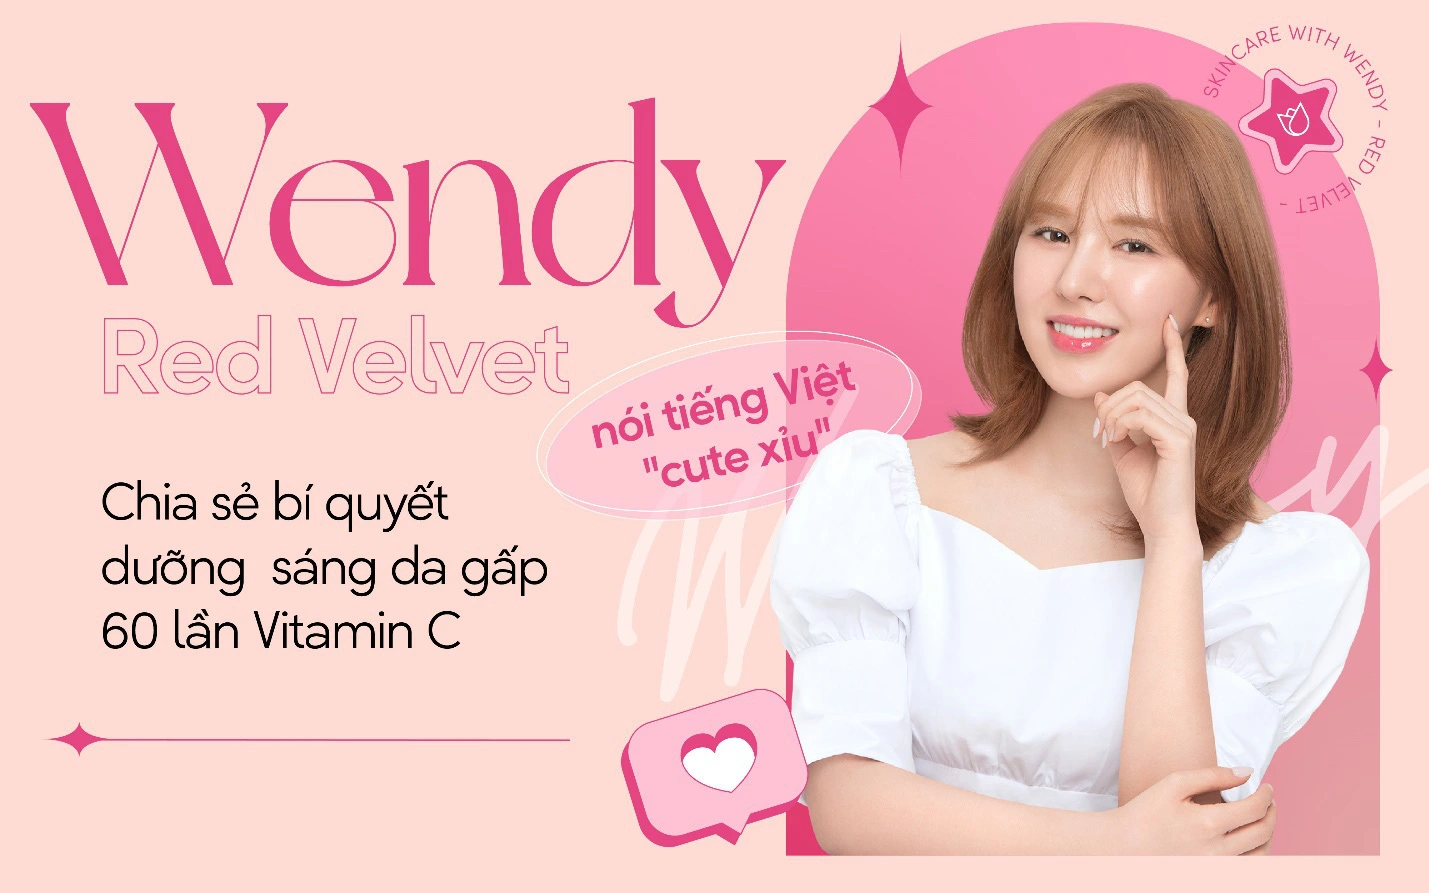 Wendy (Red Velvet) nói tiếng Việt &quot;cute xỉu&quot;, chia sẻ bí quyết dưỡng sáng da đặc biệt “vượt mặt” cả Vitamin C